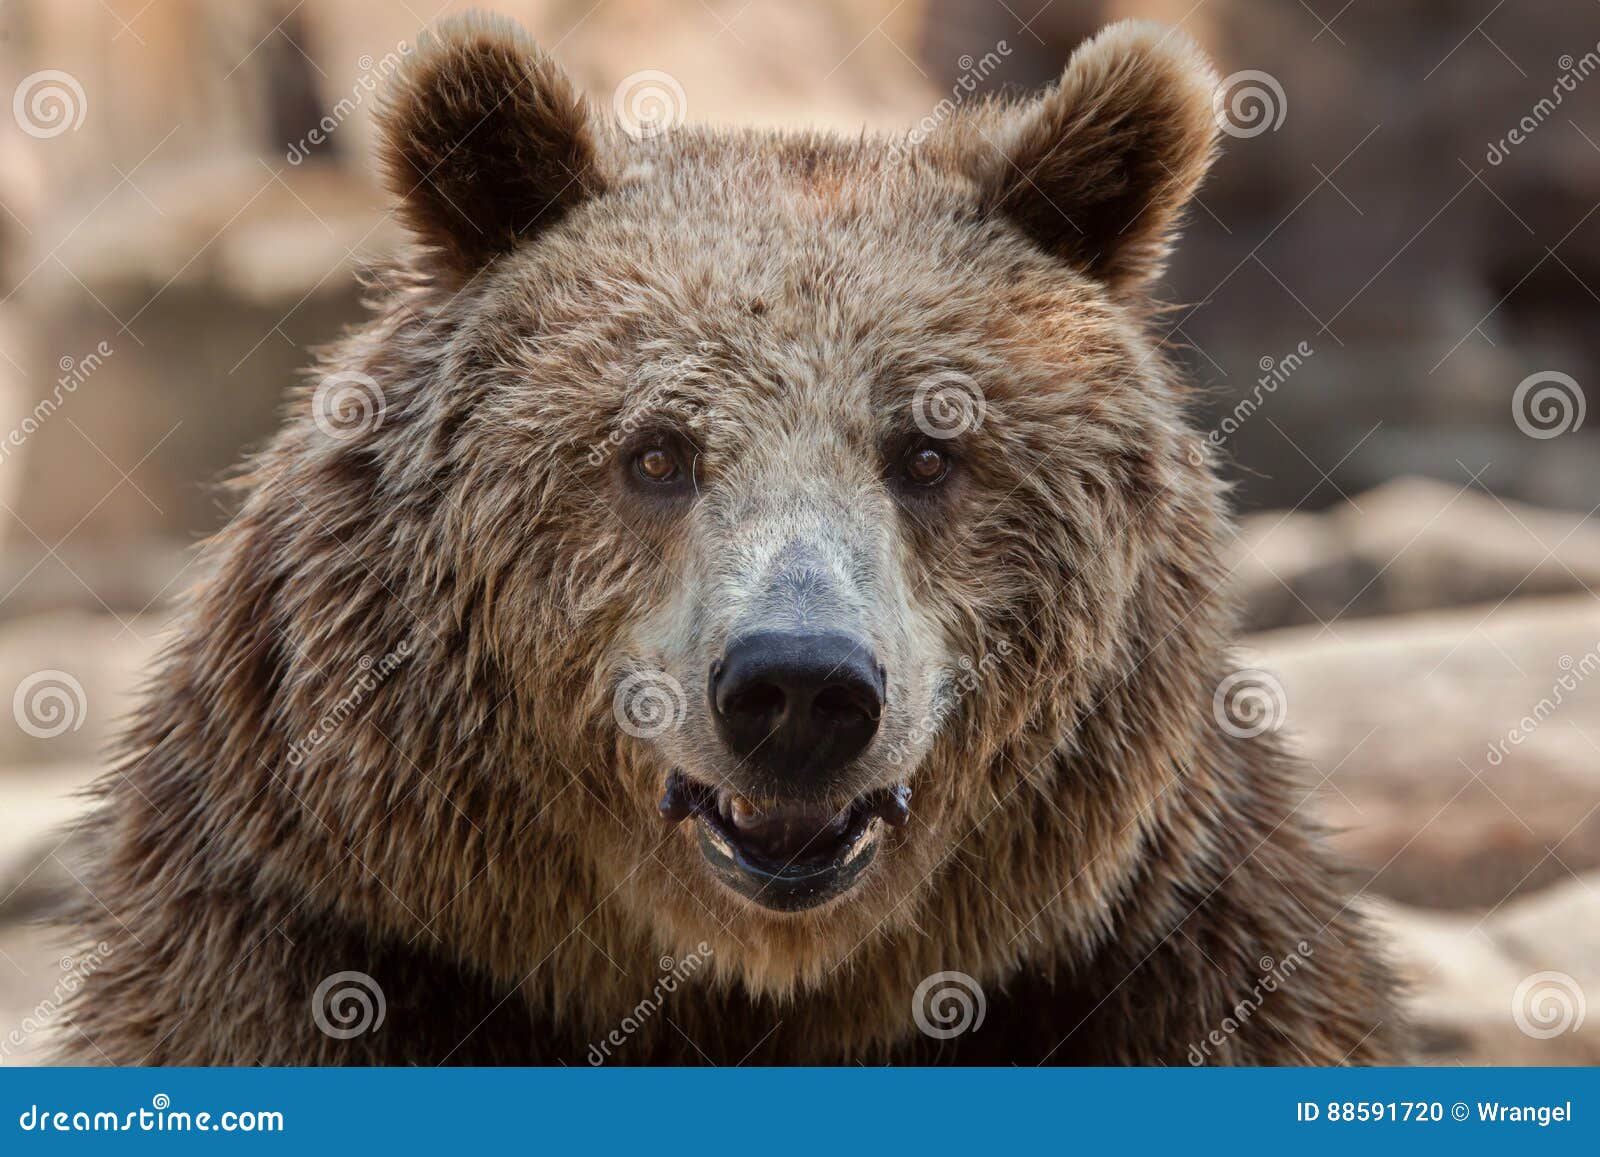 eurasian brown bear ursus arctos arctos